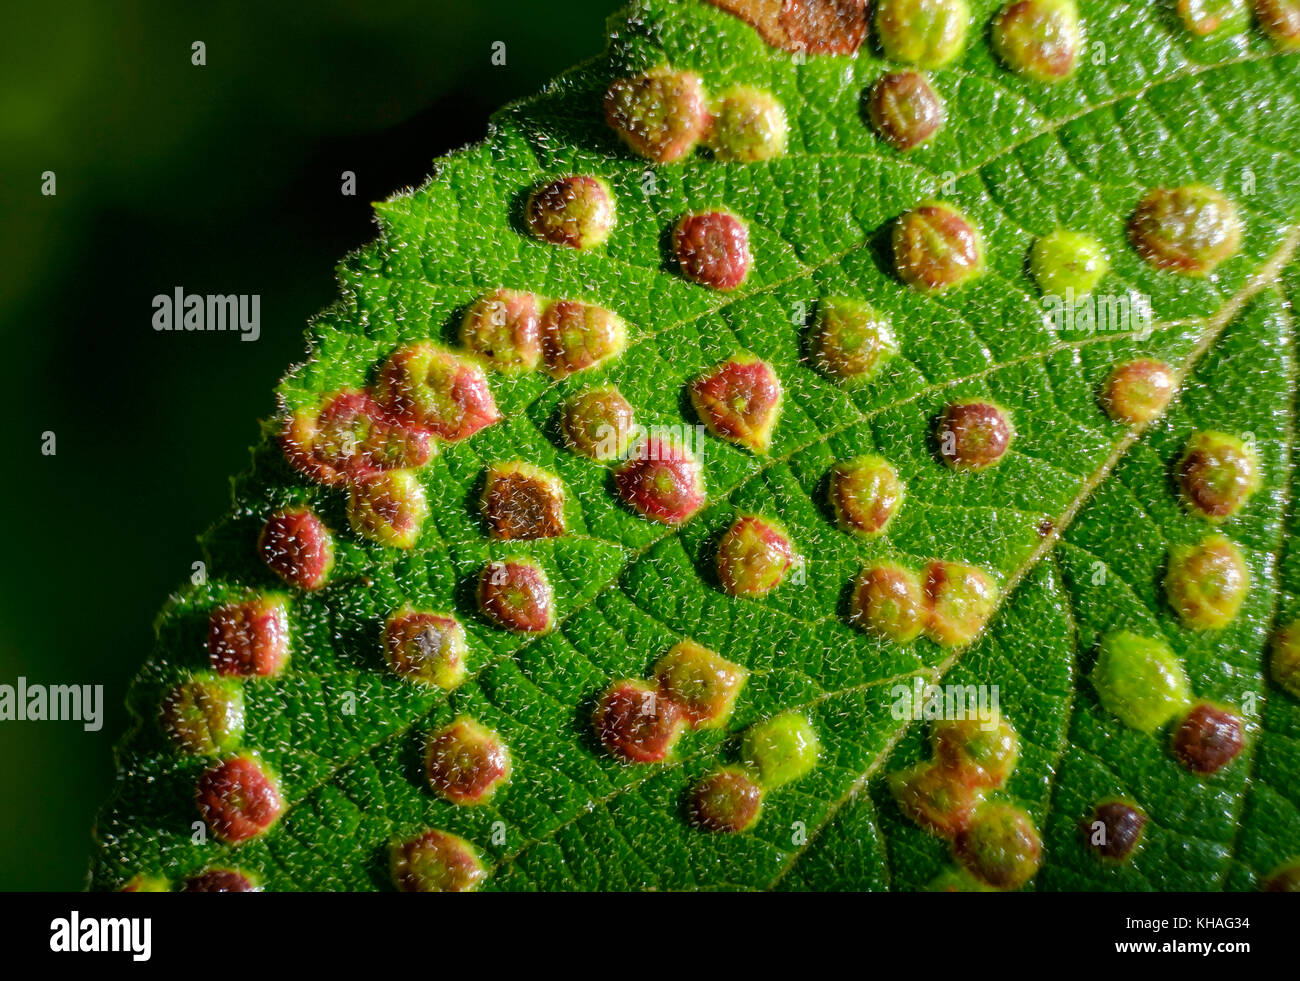 Gallen oder gallenblase der Gallenblase Milbe (phytoptus laevis) auf Blatt der viburnum Lantana (viburnum Lantana), Bayern, Deutschland Stockfoto